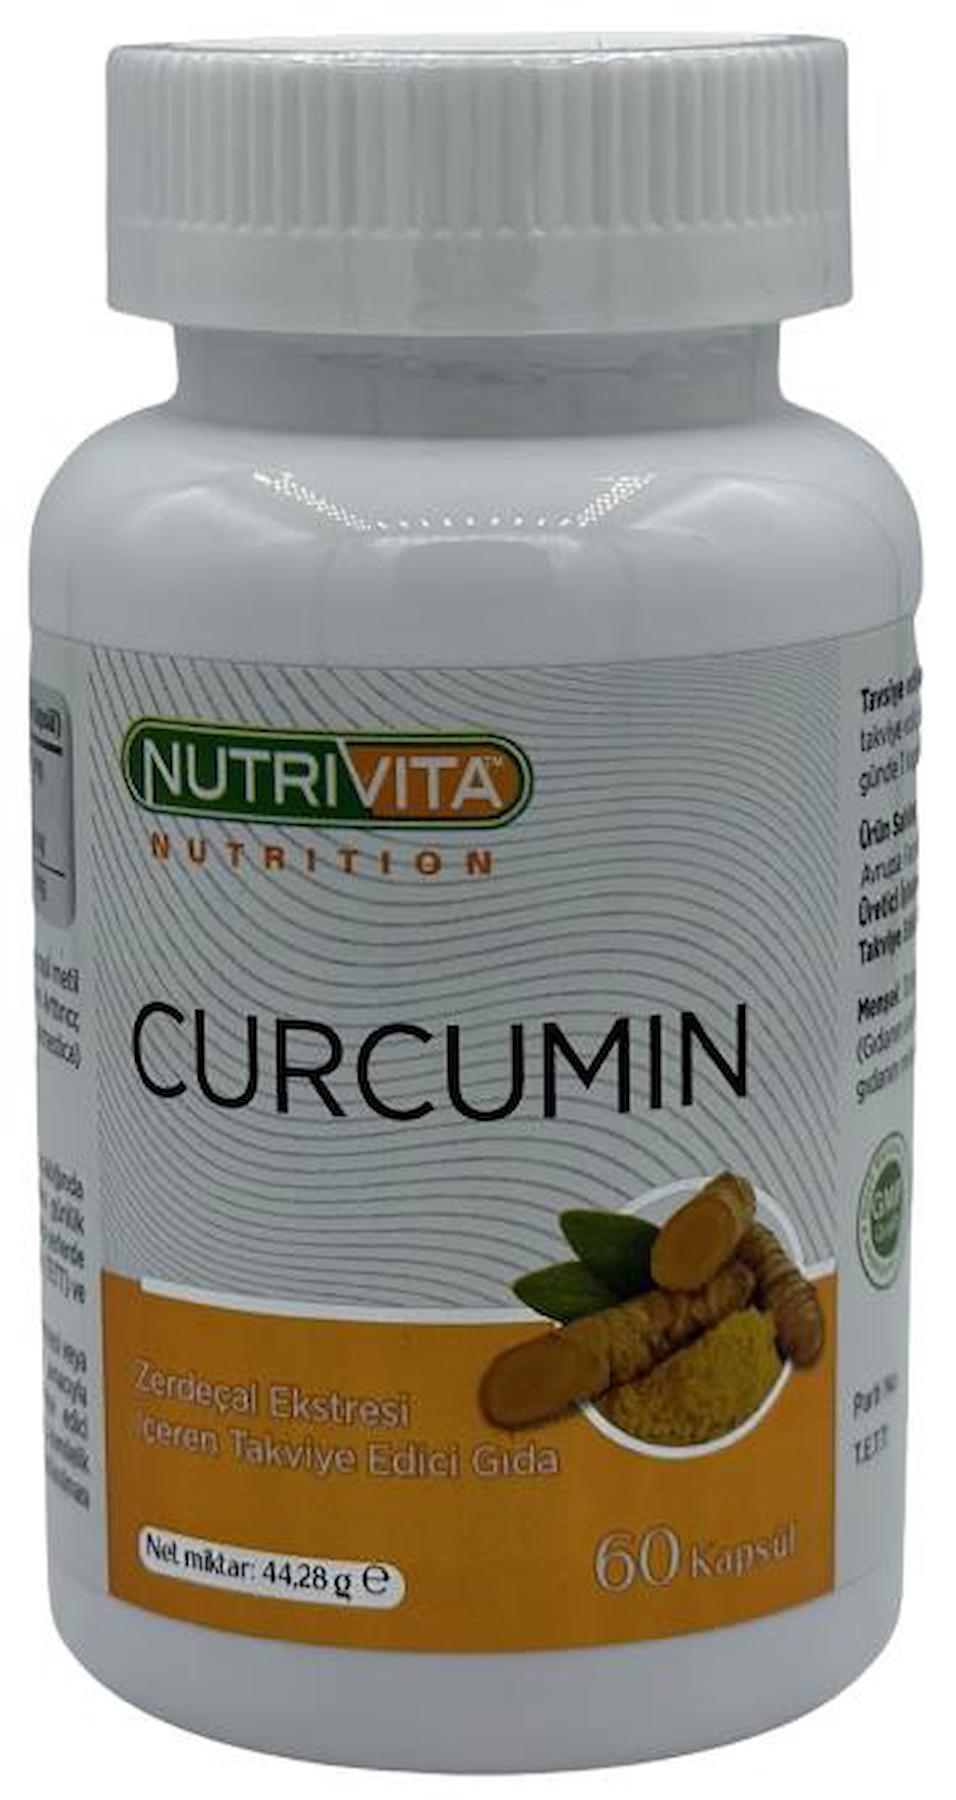 Nutrivita Nutrition Curcumin Aromasız Unisex Vitamin 60 Tablet